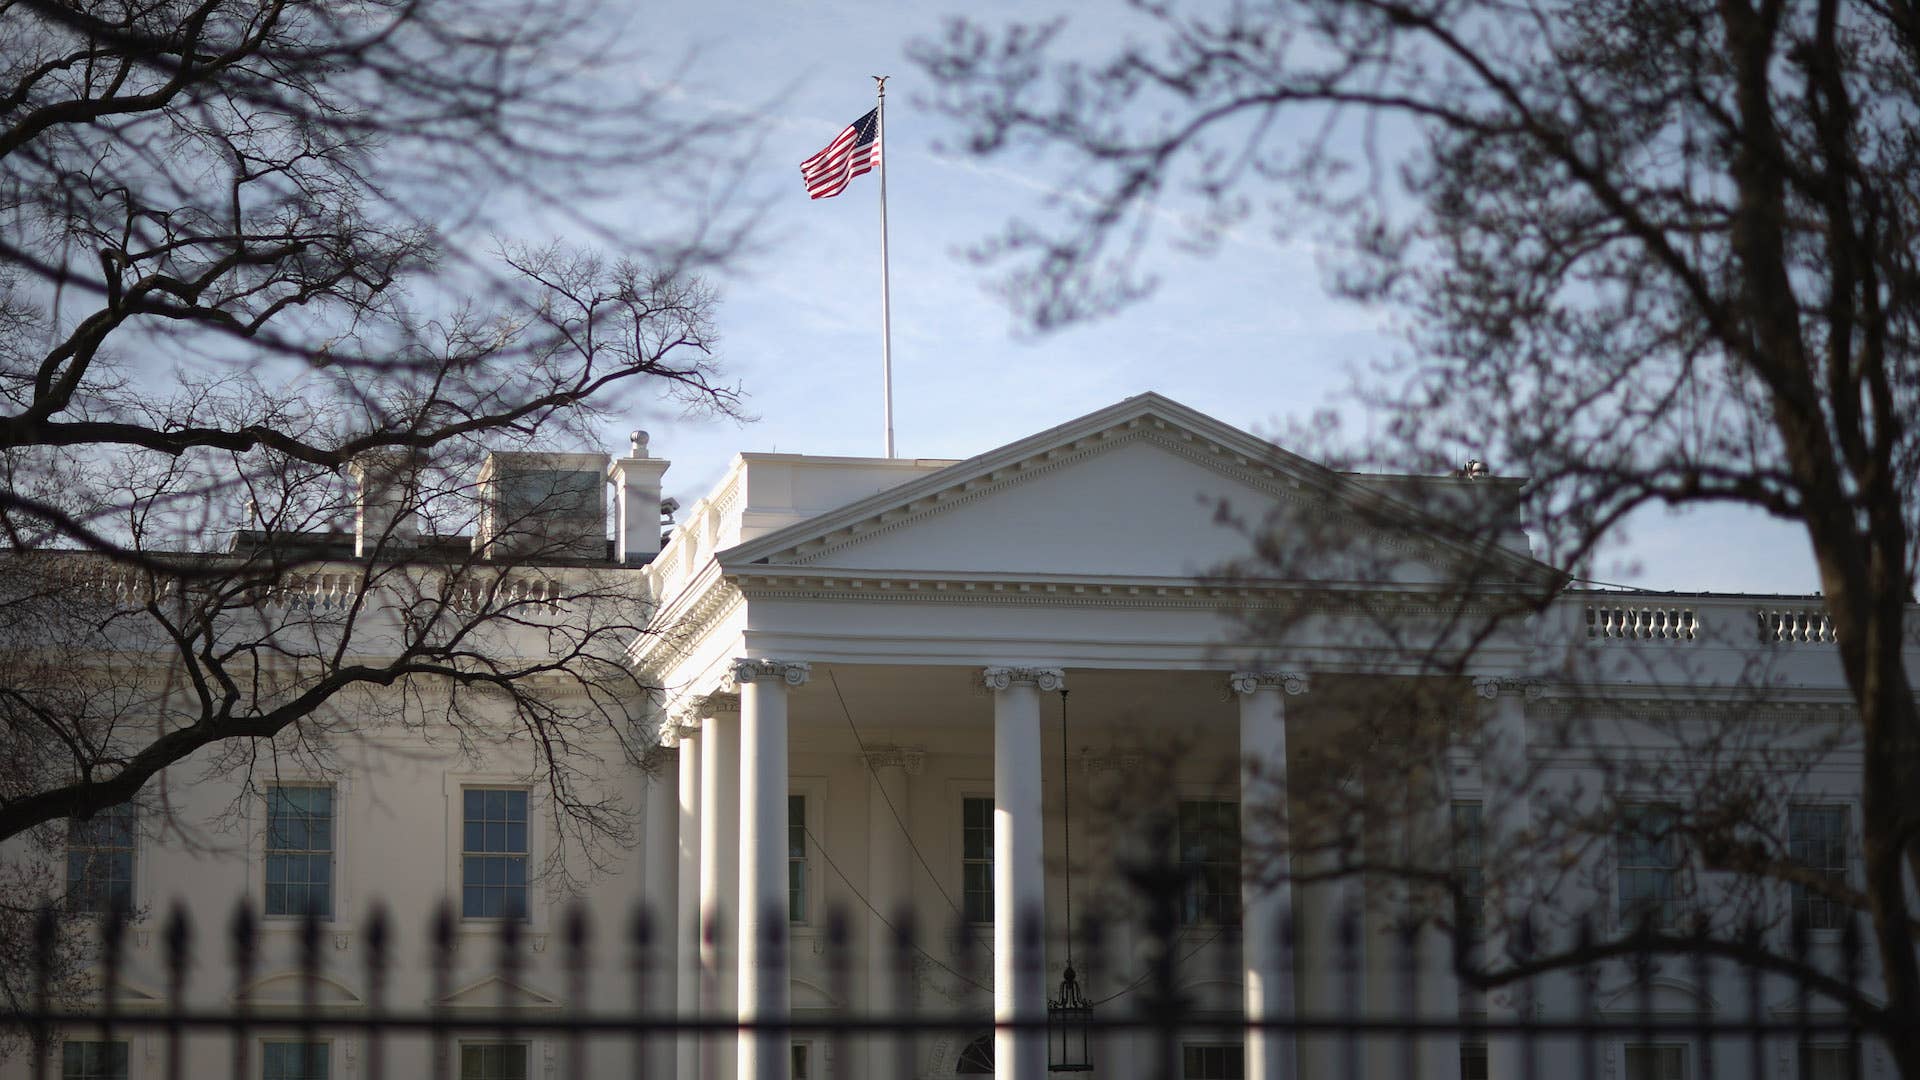 Morning sunlight strikes the flag flying above the White House.